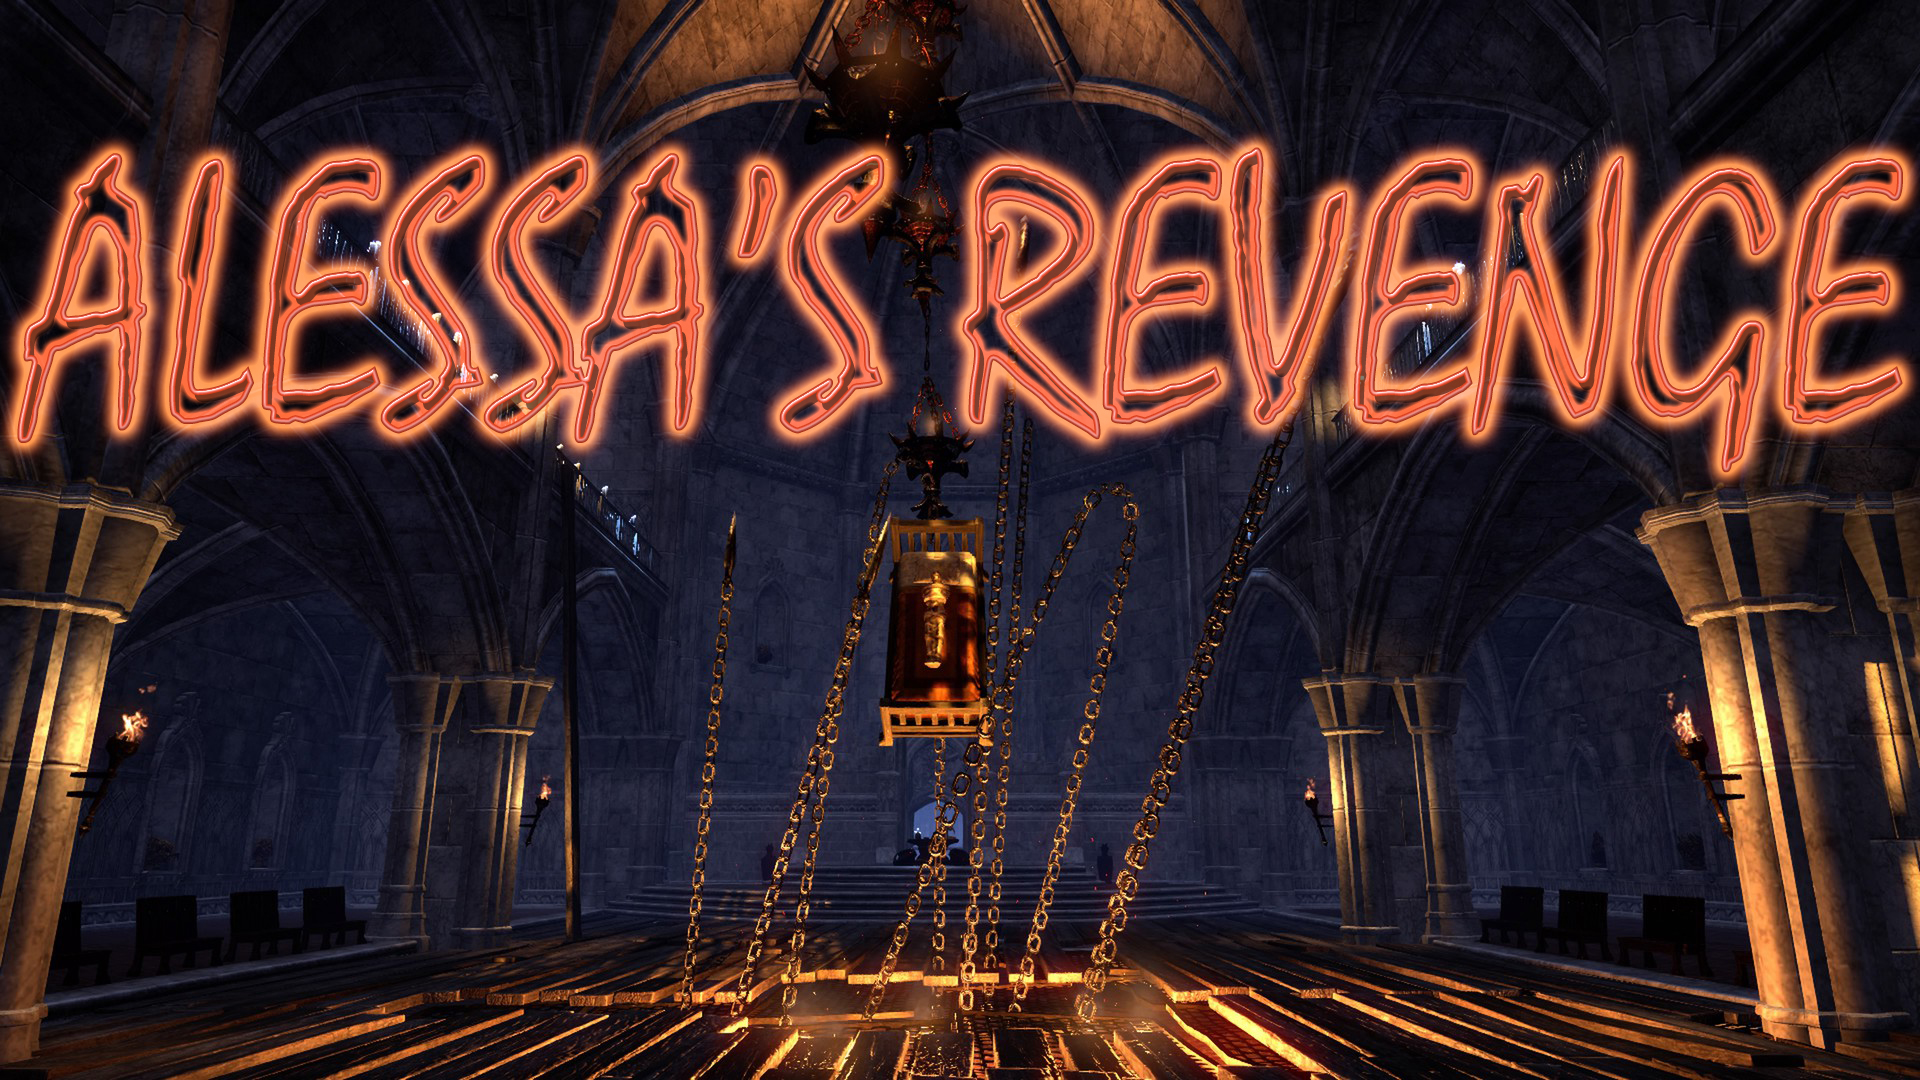 Alessa's revenge [NA]